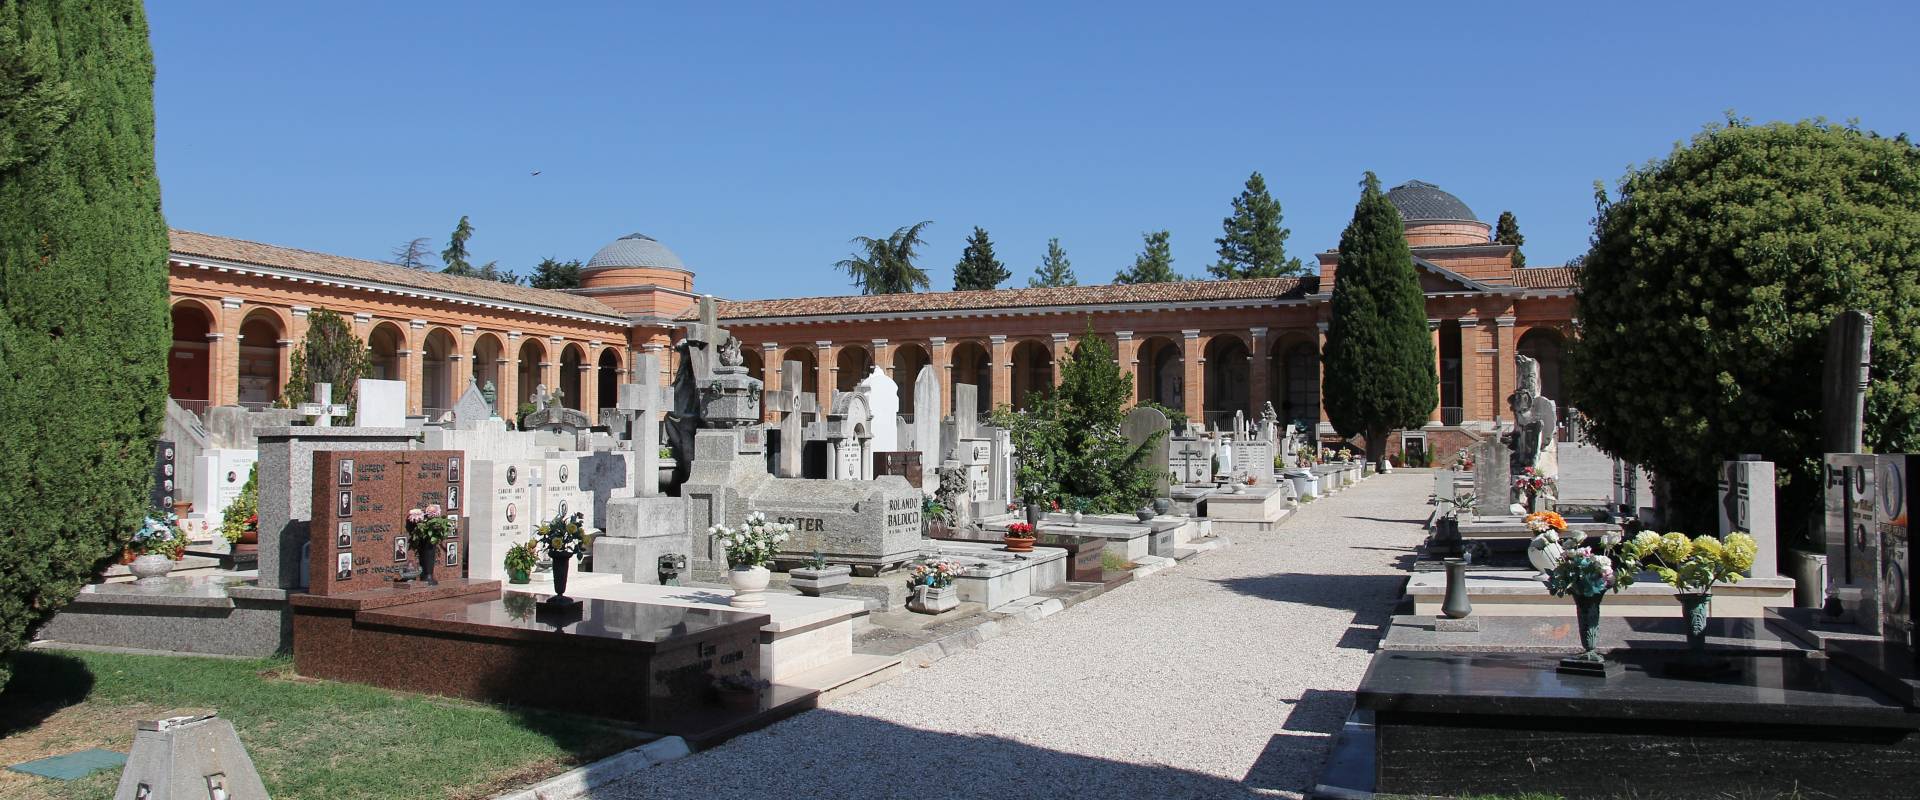 Forlì, cimitero monumentale (14) foto di Gianni Careddu